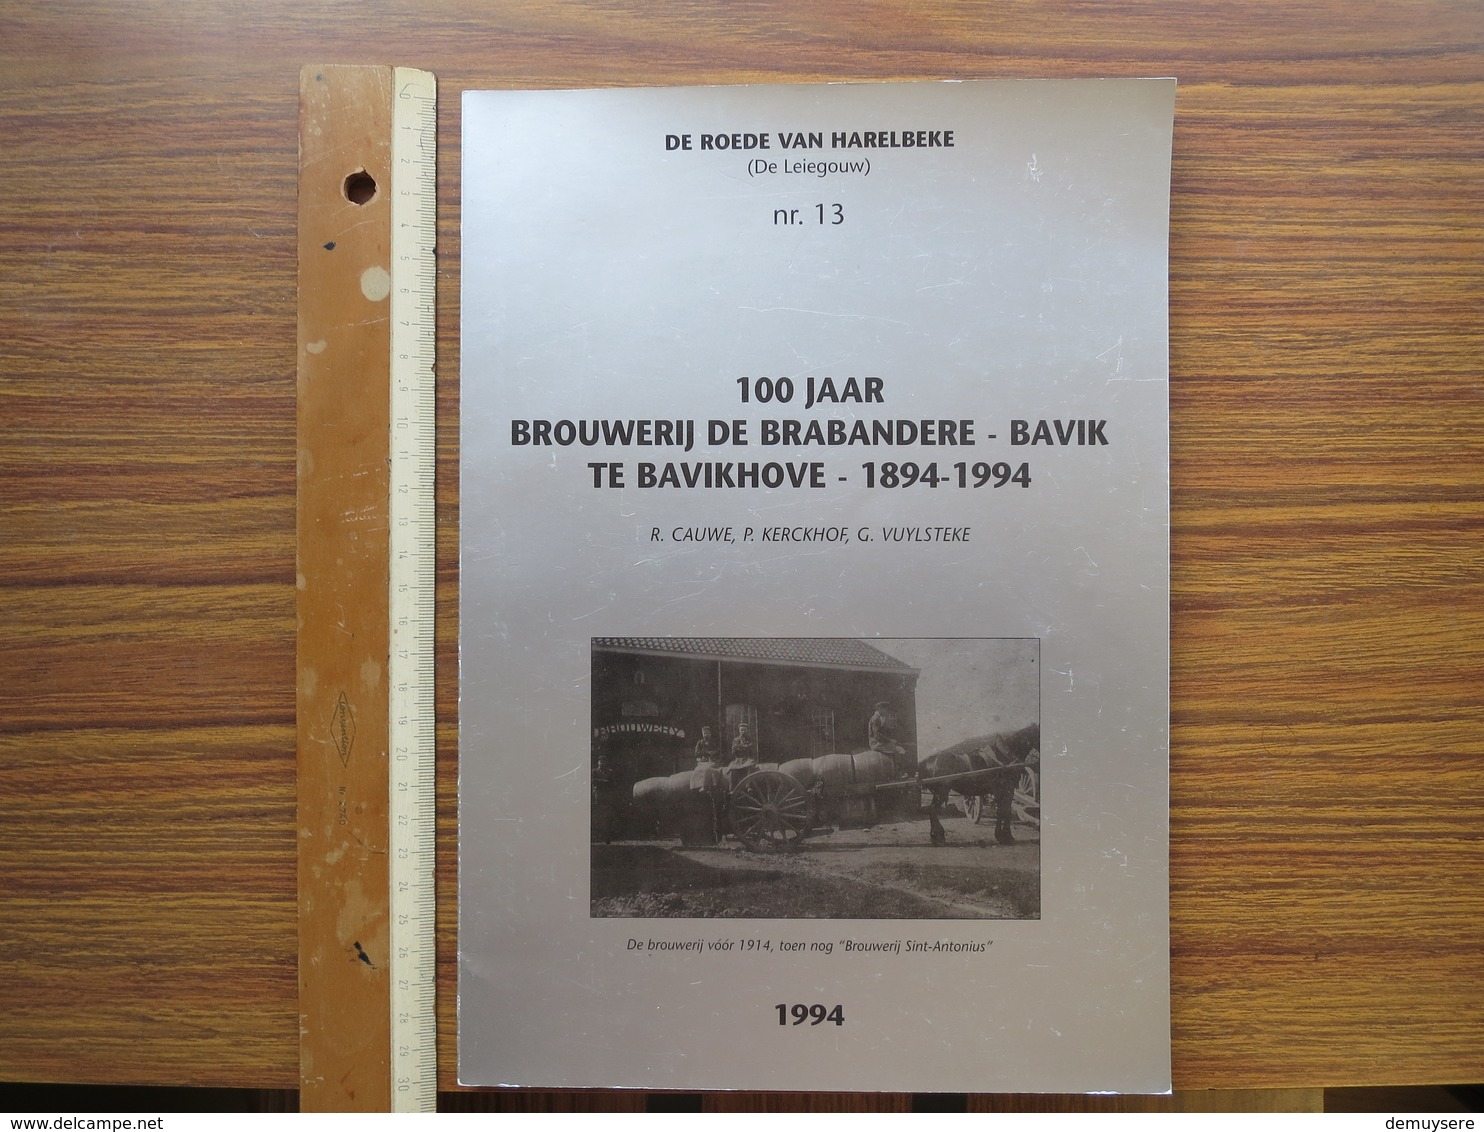 BOEK G 001 - DE ROEDE VAN HARELBEKE NR 13 - 100 JAAR BROUWERIJ DE BRABANDERE BAVIK TE BAVIKHOVE - History